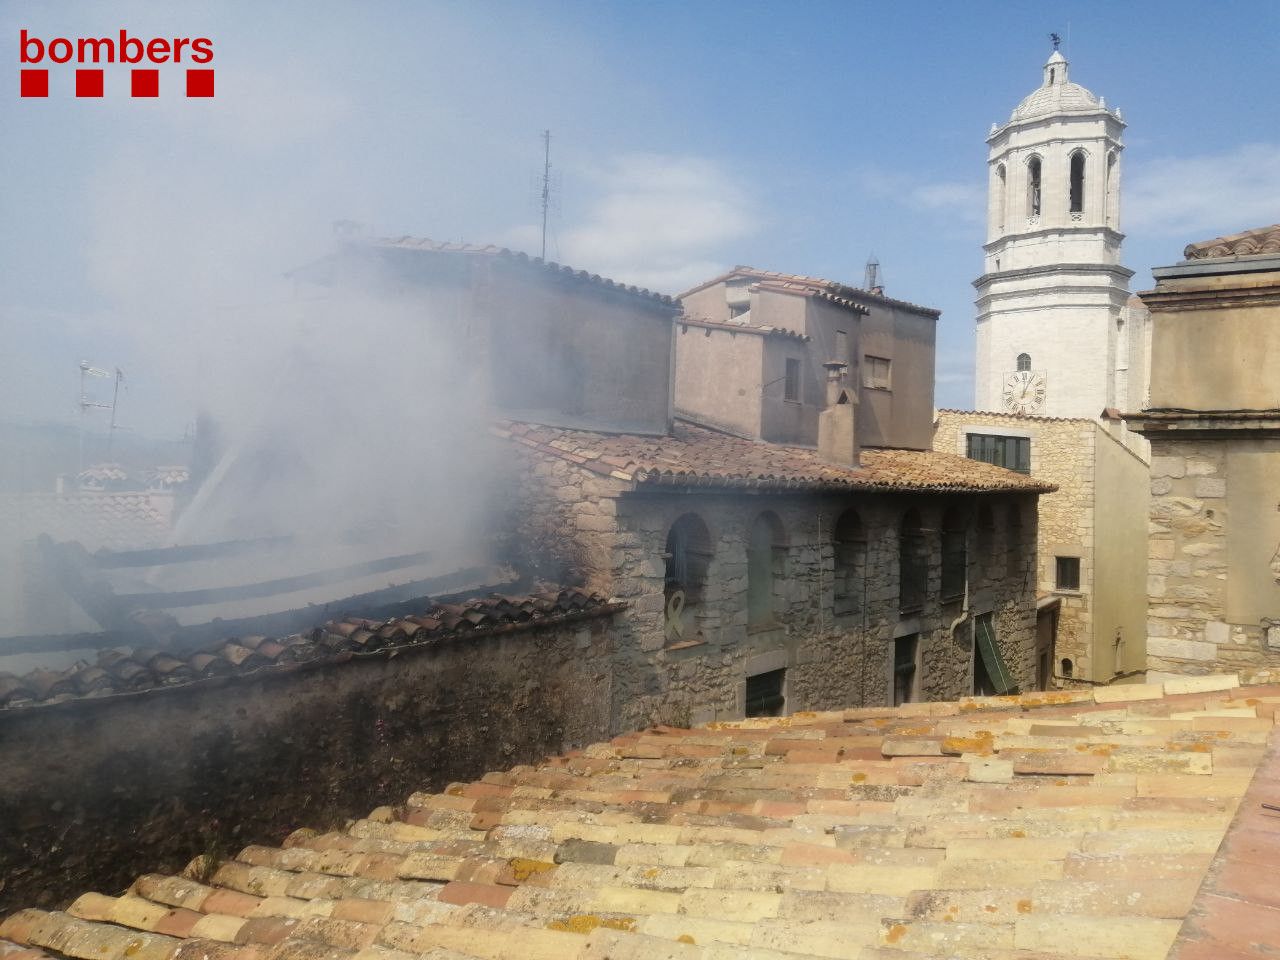 Incendio Girona / Bombers